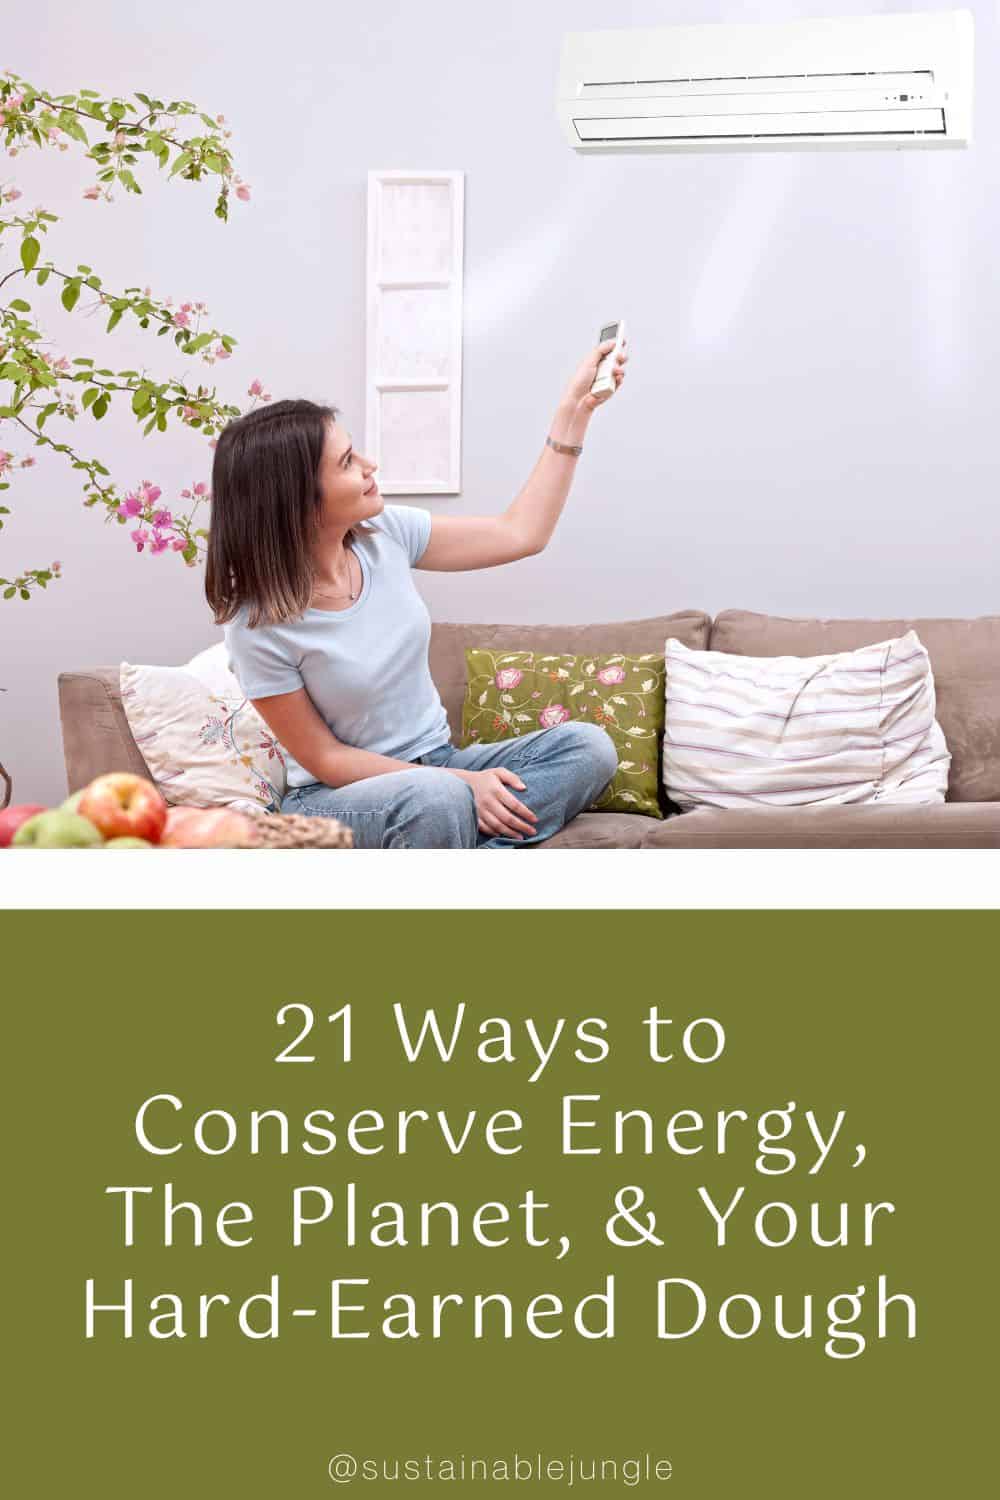 《21种节约能源、地球和你辛苦赚来的钱的方法》作者:izzetugutmen